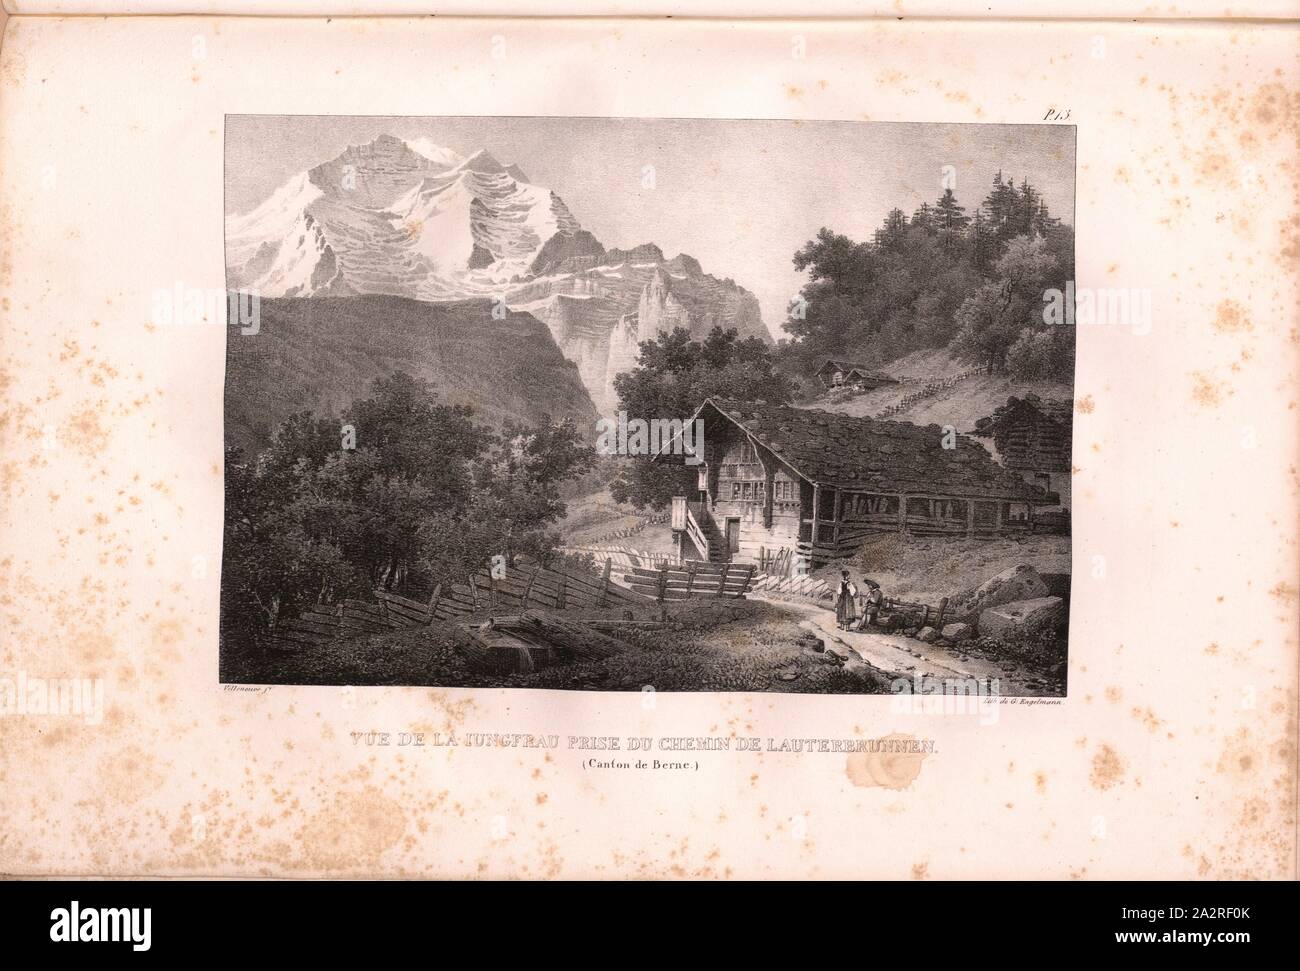 View of Iungfrau taken from Lauterbrunnen Road, Virgin seen from Lauterbrunnen, Signed: Villeneuve, G. Engelmann, lithograph, plate 13 (vol. 1, part 1), Villeneuve, M. (ft.); Engelmann, Godefroy (lith.), 1823, Hilaire Léon Sazerac, Godefroy Engelmann: Lettres sur la Suisse (...). Paris: [s.n.], 1823-1832 Stock Photo